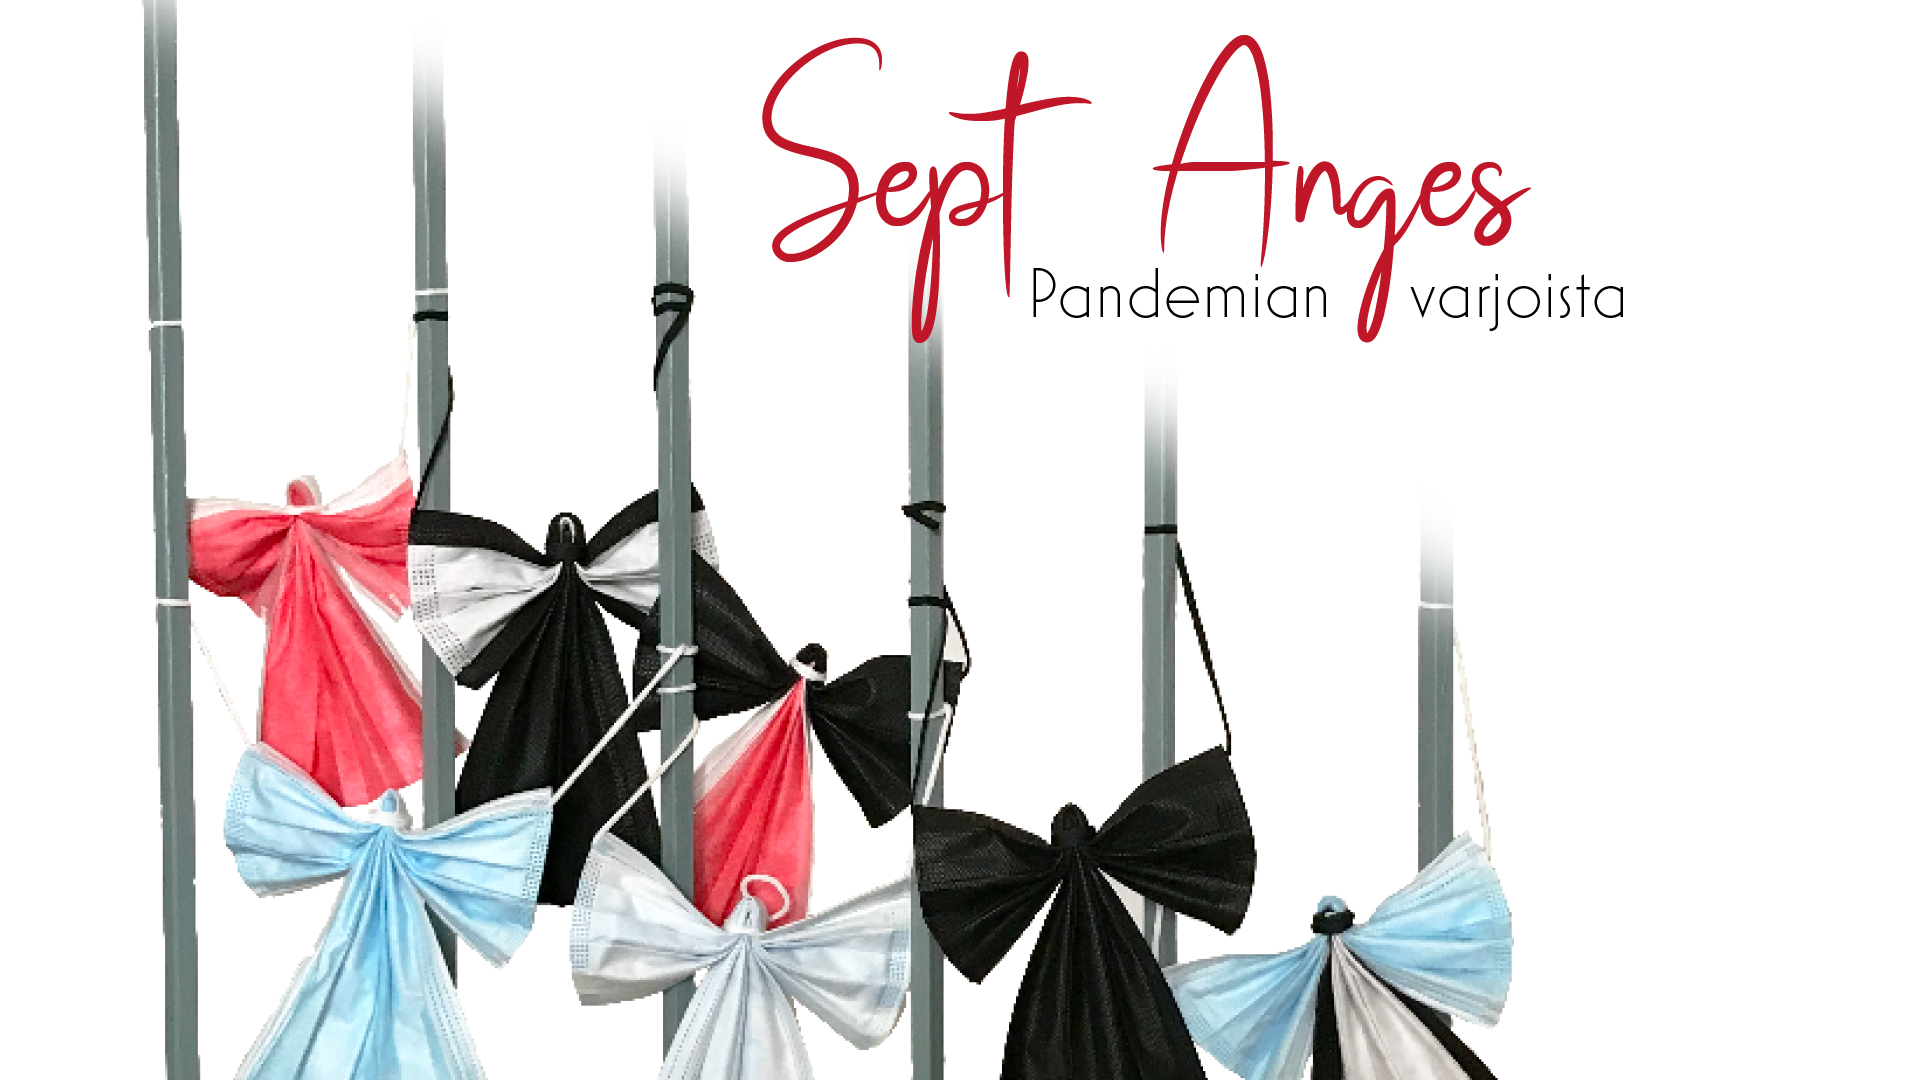 Sept Anges – Pandemian varjoista -konsertin juliste, jossa näkyy kaltereissa roikkuvia kasvomaskeista taiteltuja enkeleitä.